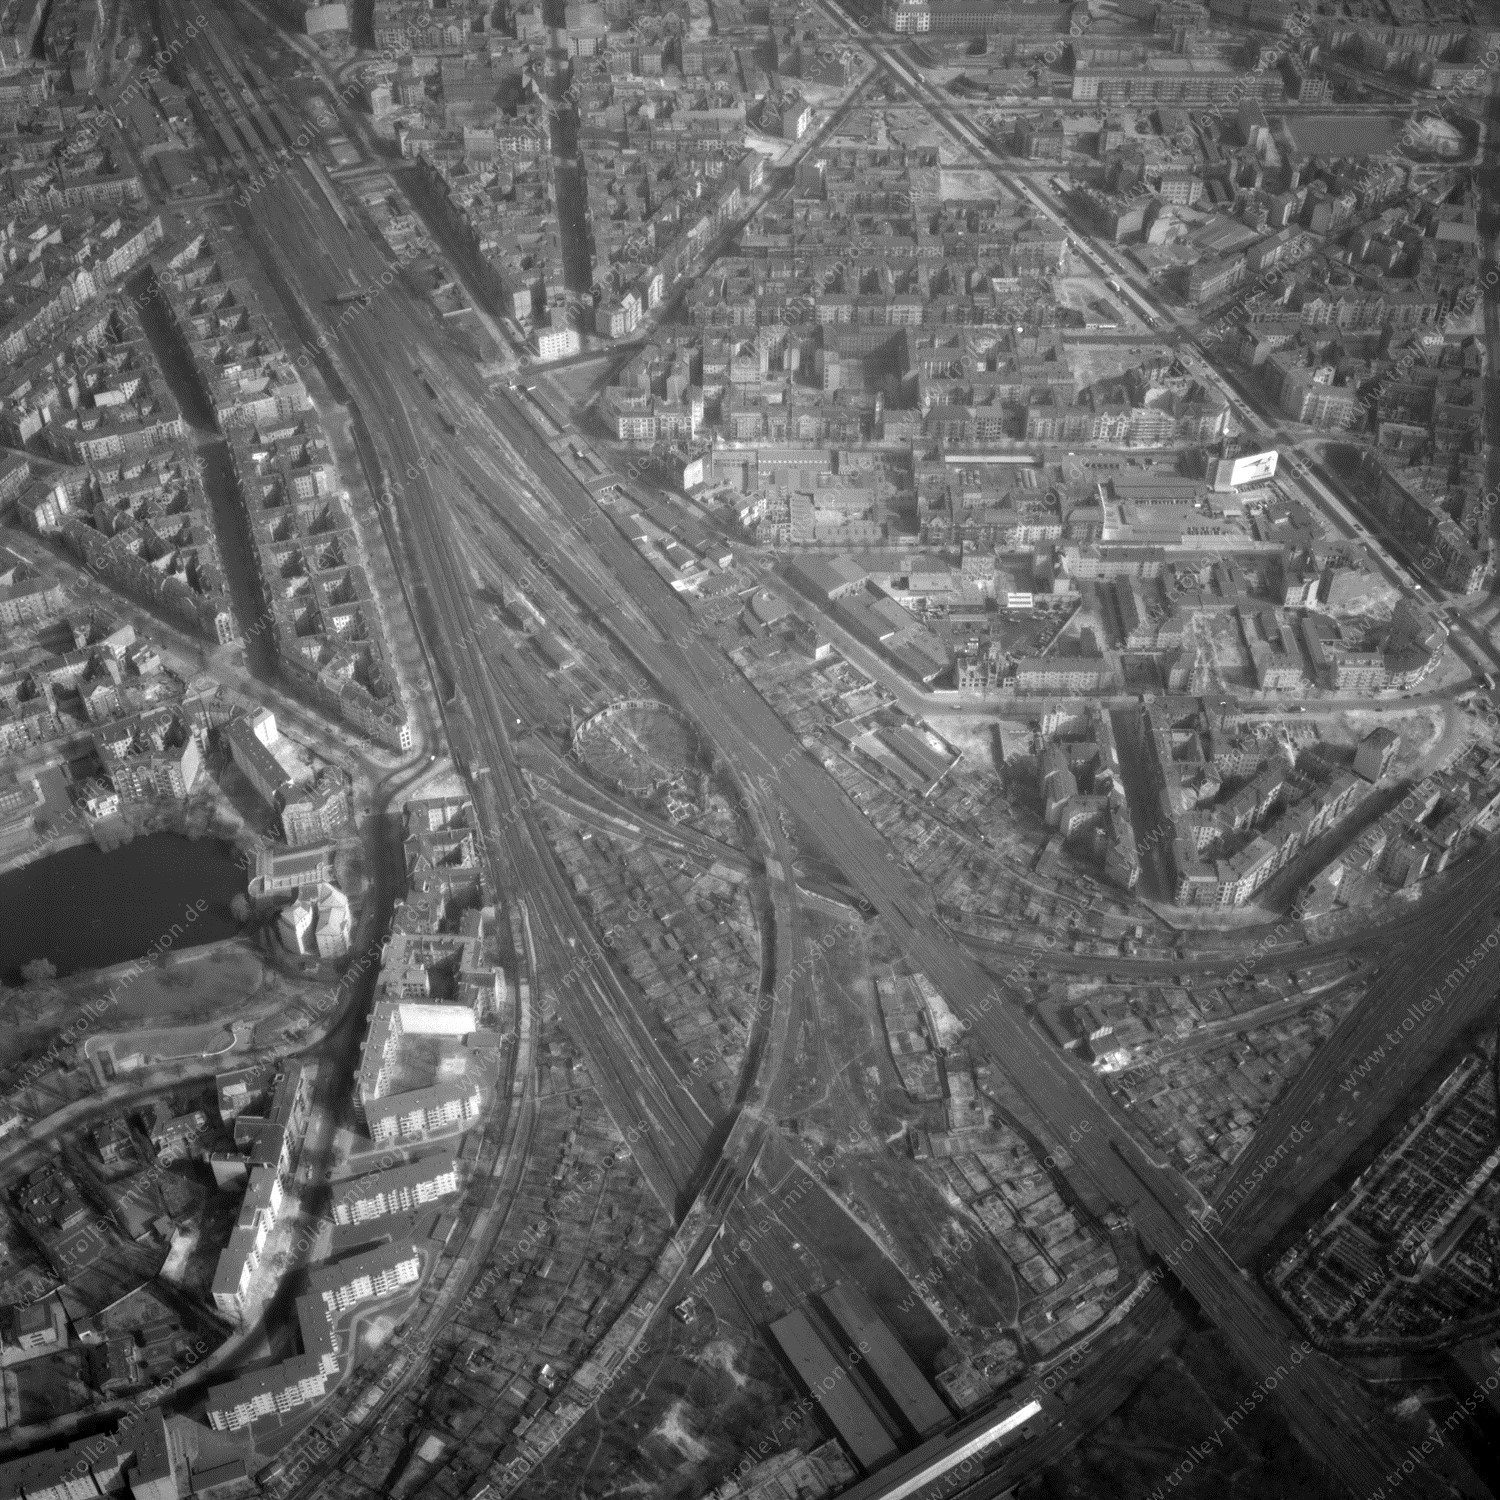 Alte Fotos und Luftbilder von Berlin - Luftbildaufnahme Nr. 12 - Historische Luftaufnahmen von West-Berlin aus dem Jahr 1954 - Flugstrecke Alpha